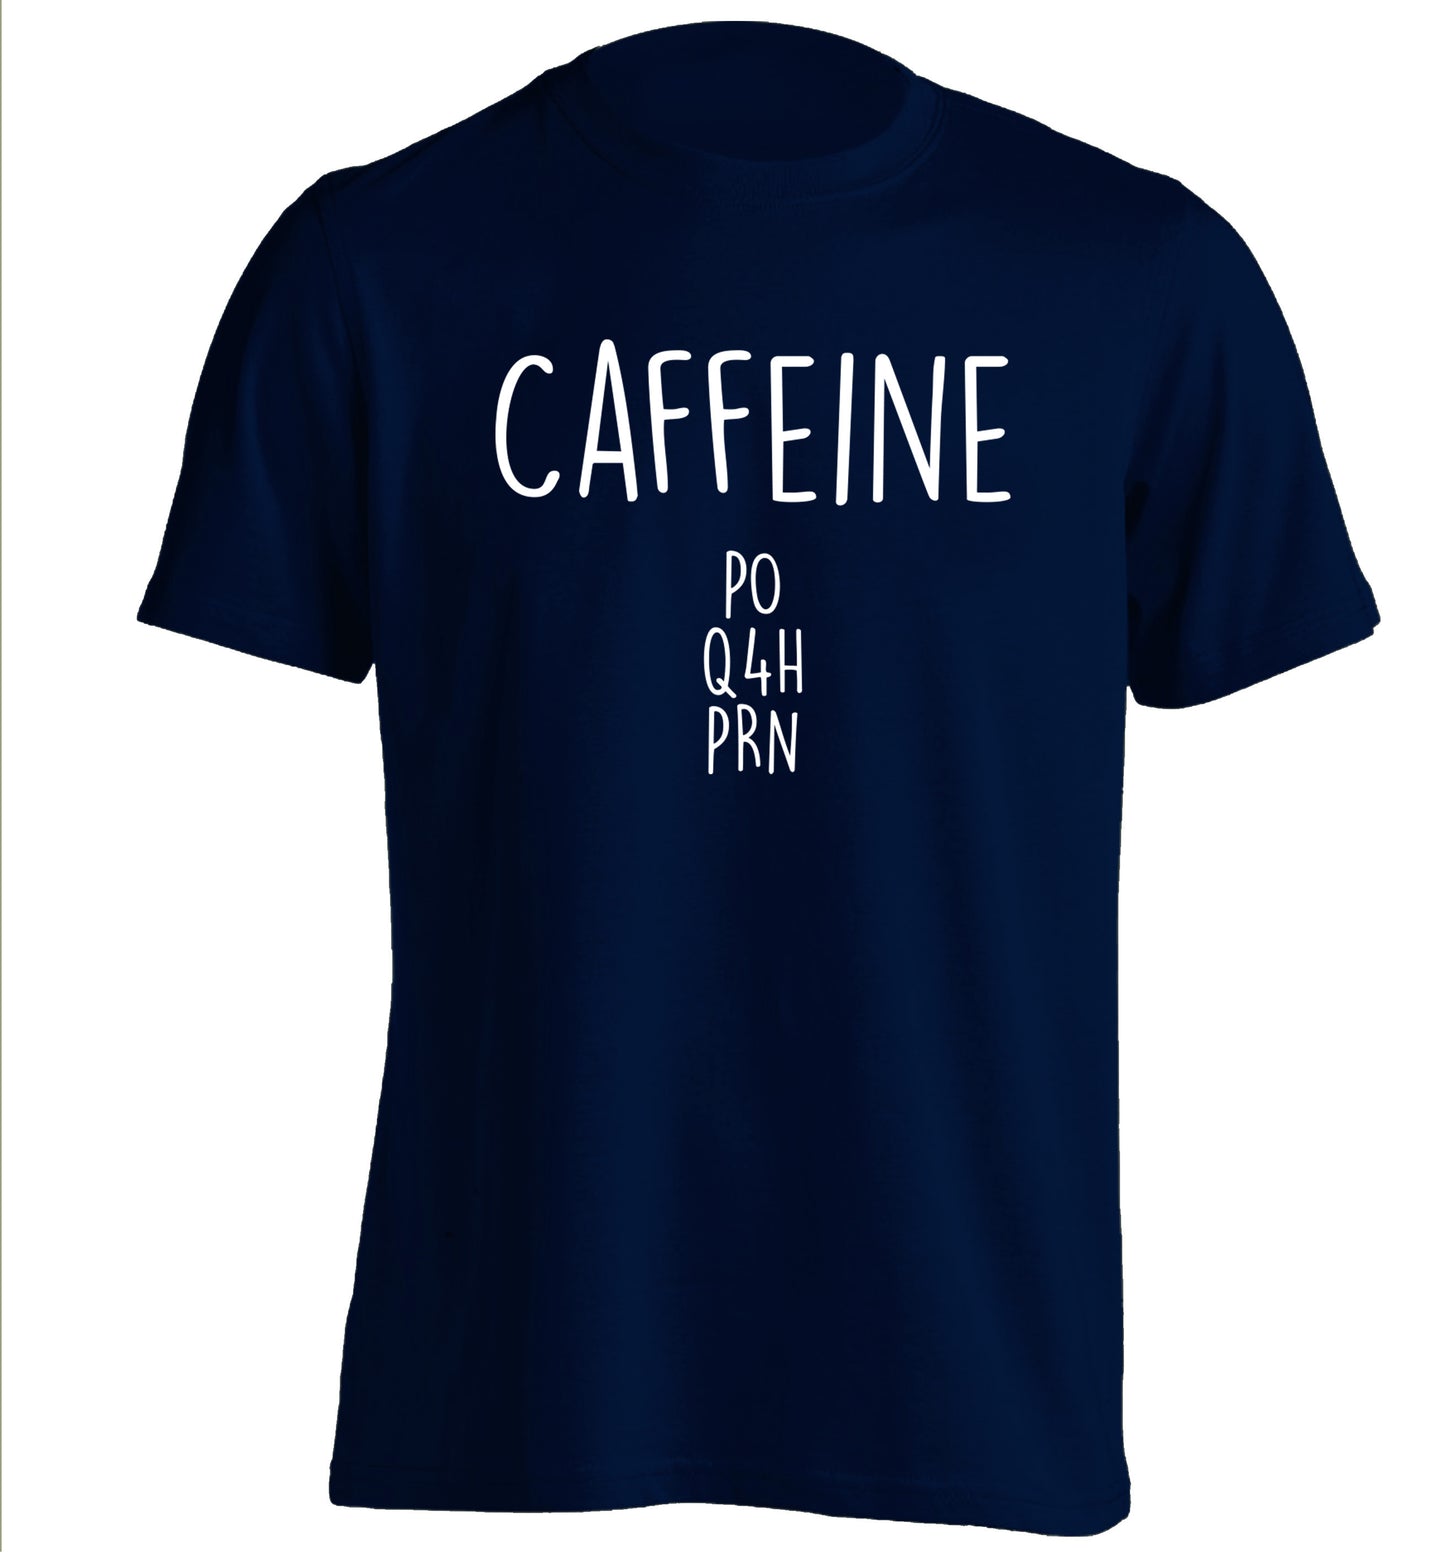 Caffeine PO Q4H PRN adults unisex navy Tshirt 2XL